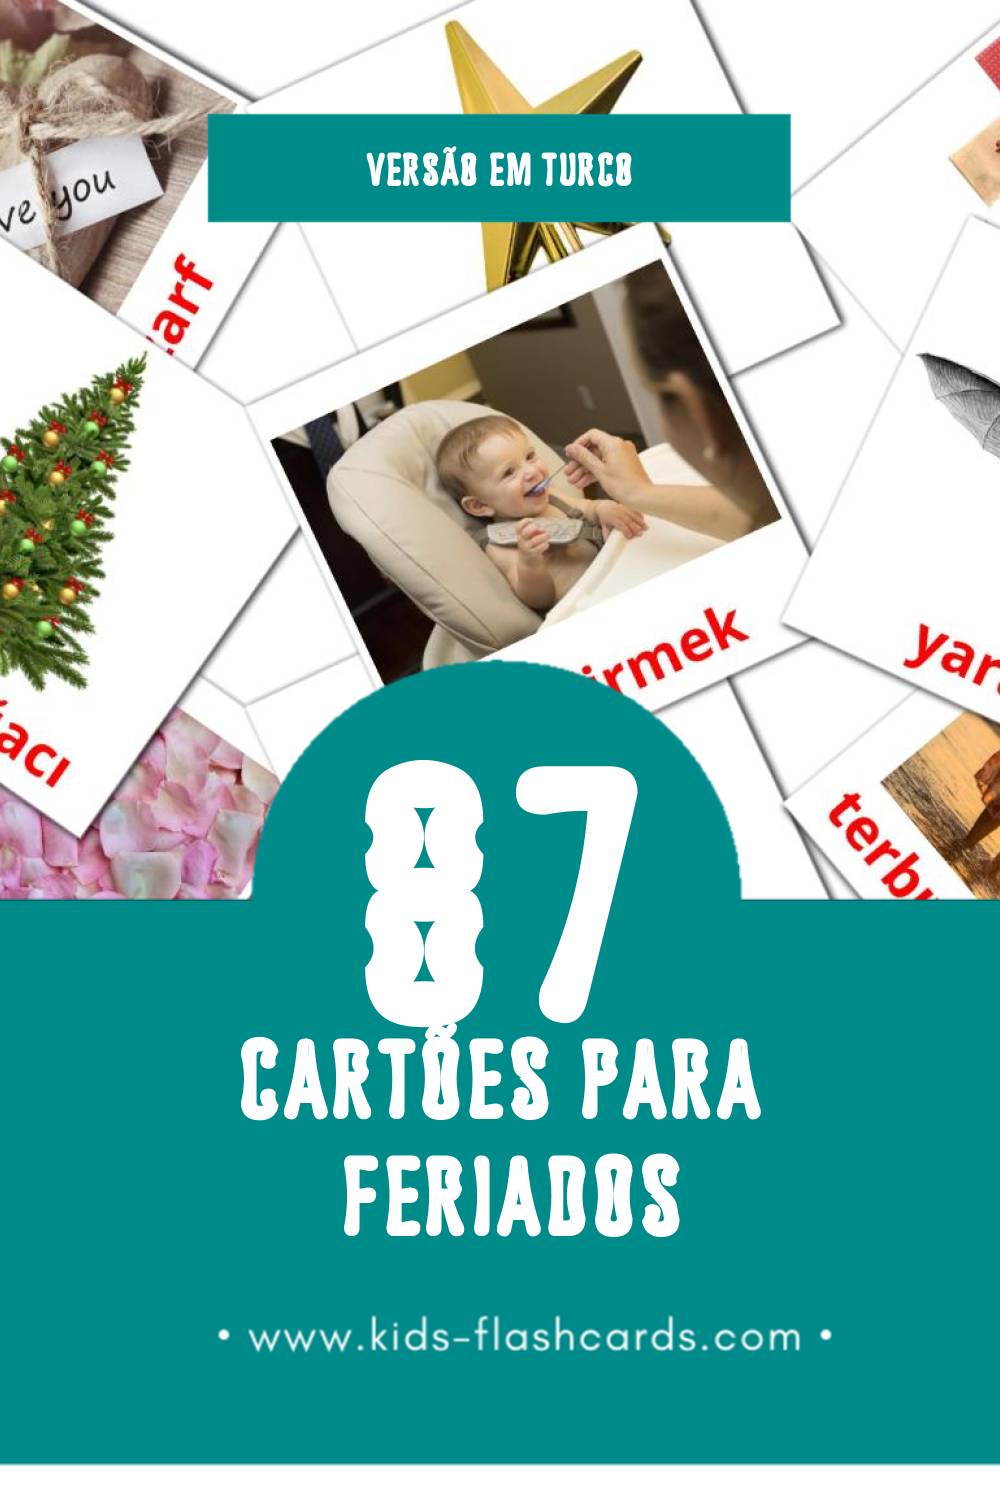 Flashcards de tatiller Visuais para Toddlers (87 cartões em Turco)